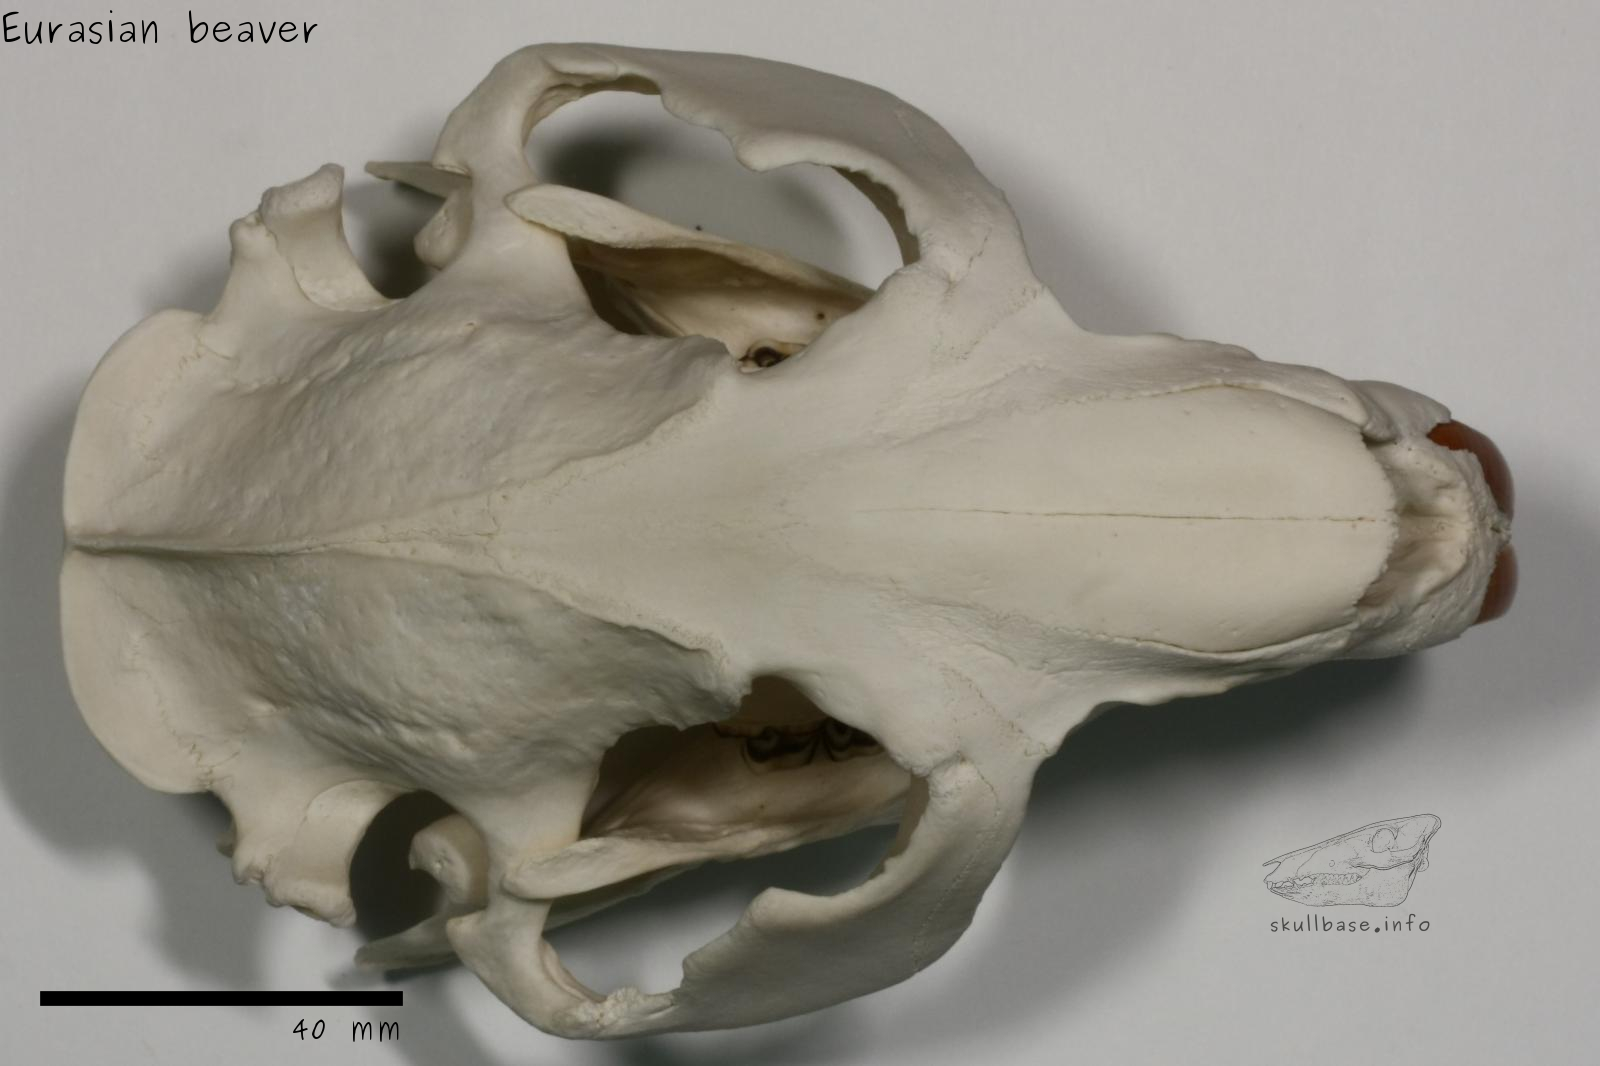 Eurasian beaver (Castor fiber) skull dorsal view